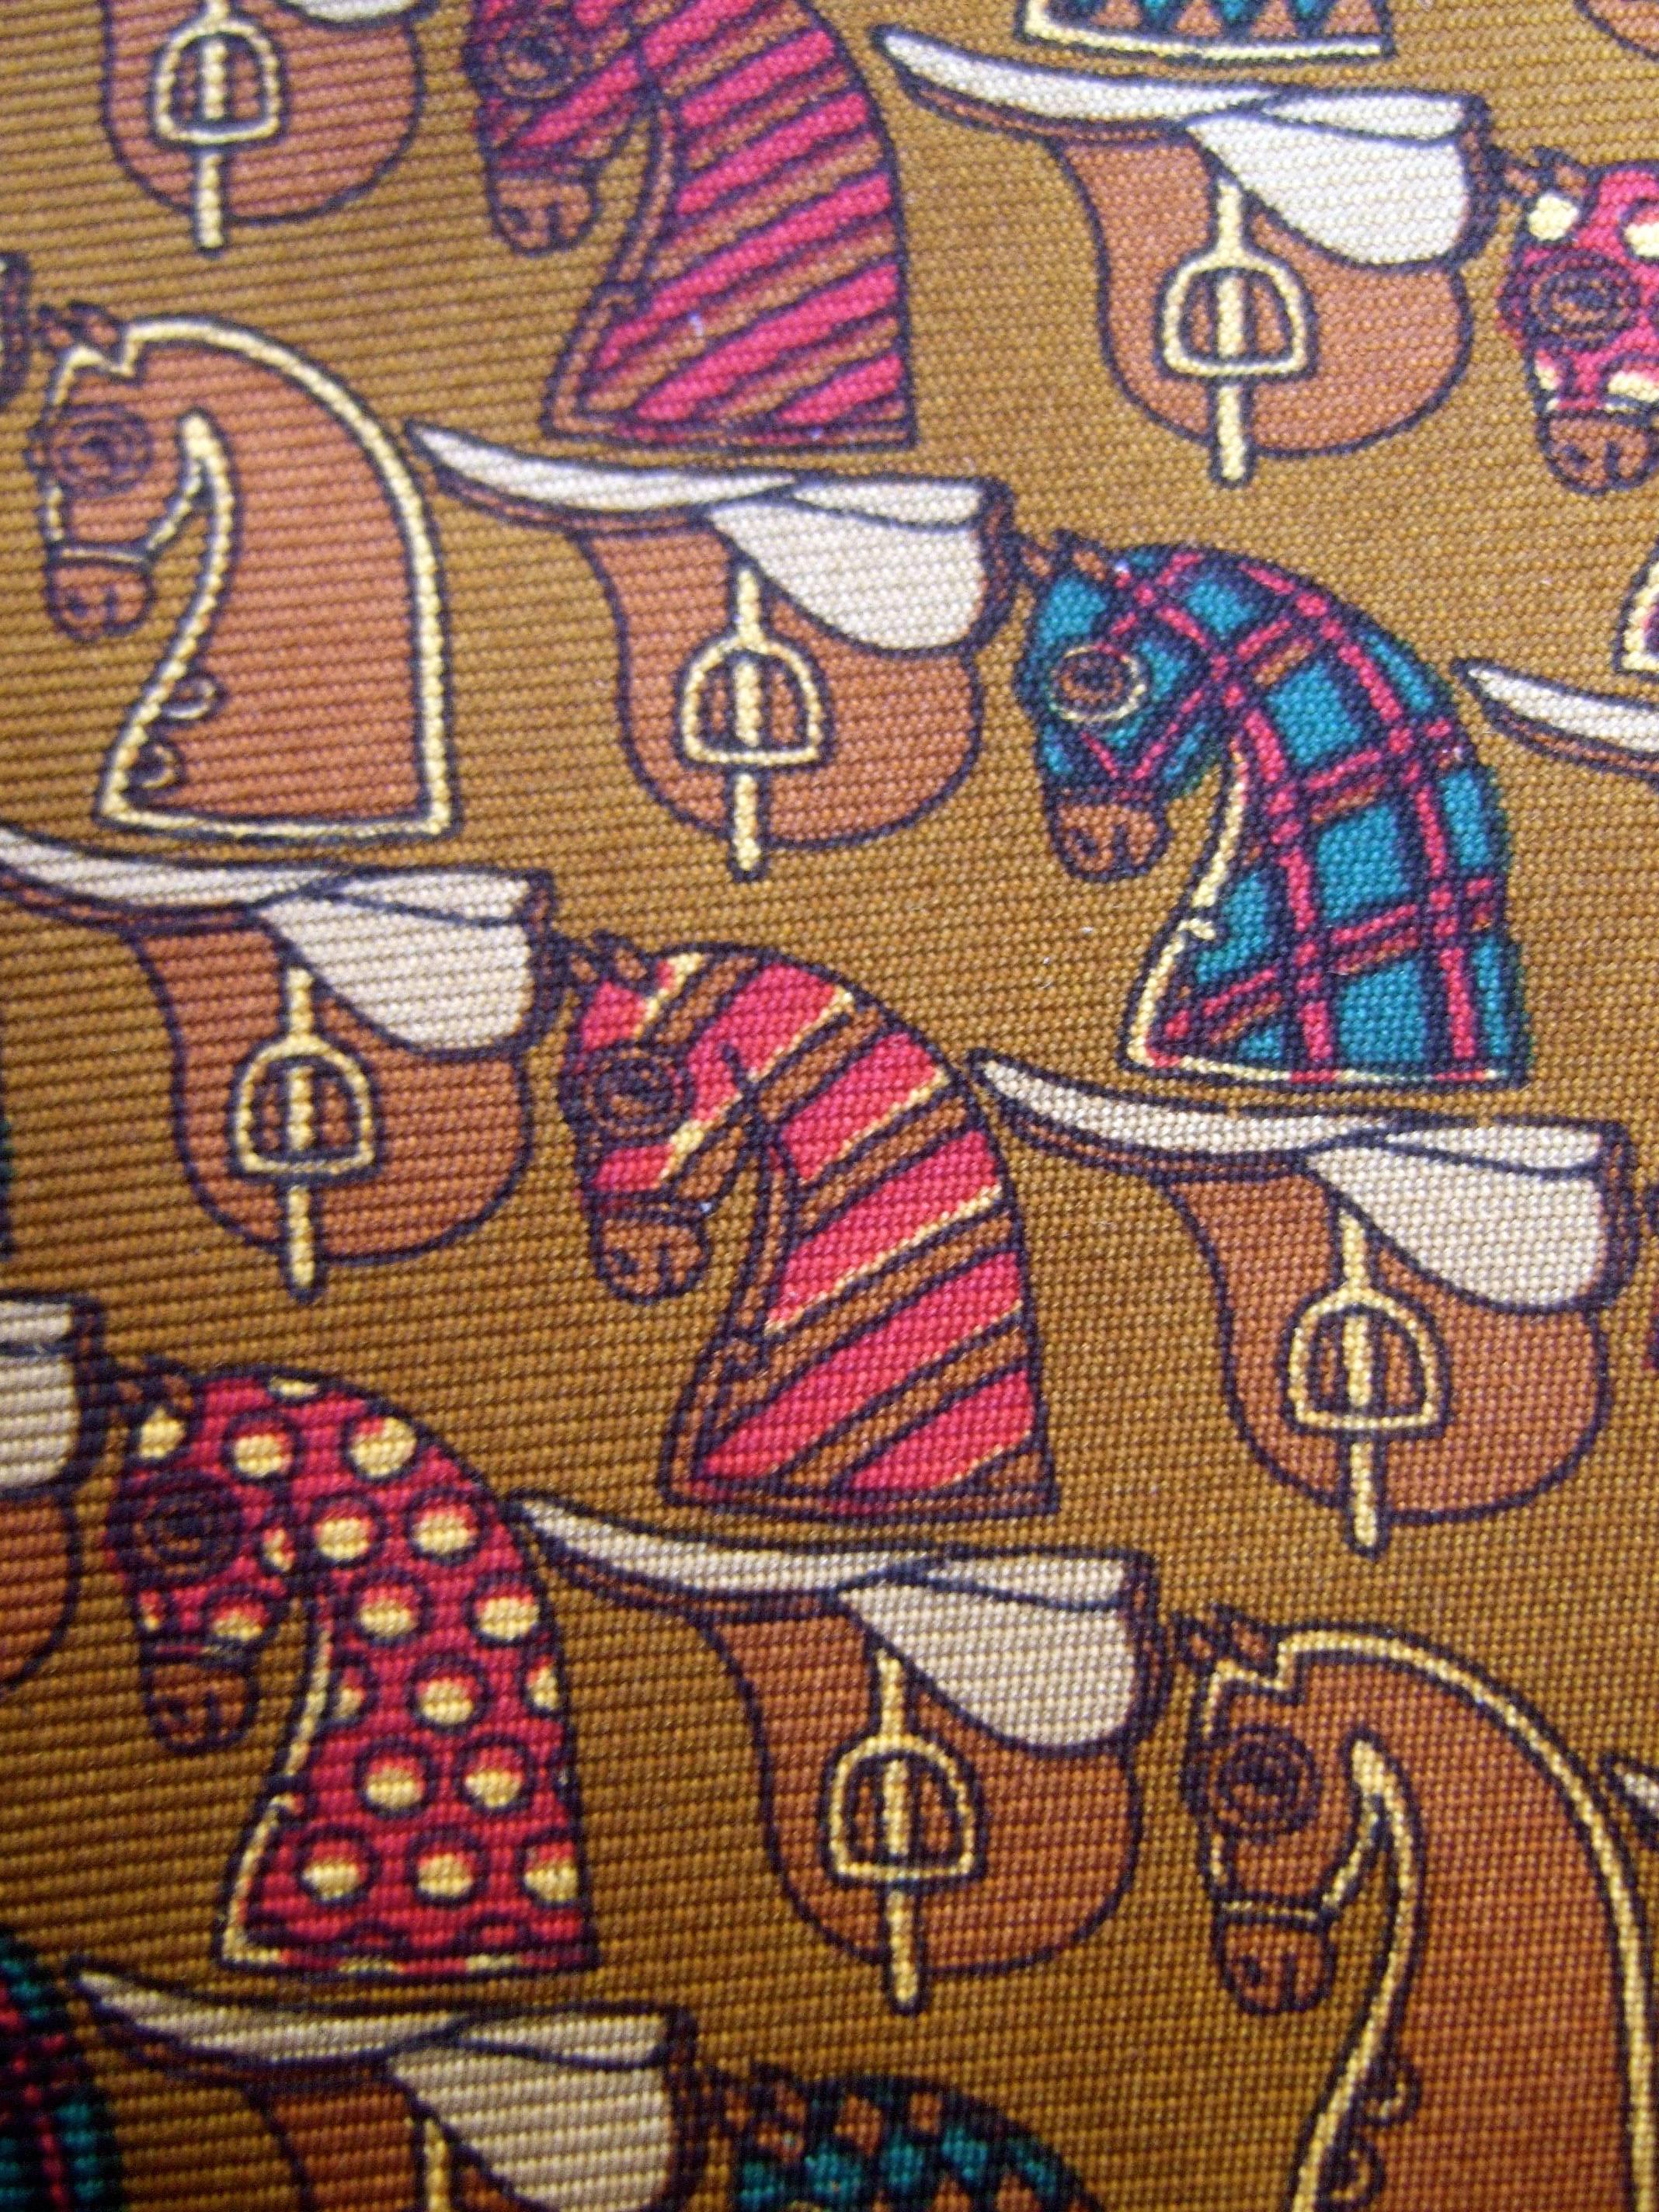 Burberry's Copper Seide Pferd Thema Seidenkrawatte c 1990s
Die stilvolle Seidenkrawatte ist mit einer Reihe von Pferdemotiven illustriert
figuren in verschiedenen Ausführungen

Unter den Pferdefiguren befinden sich Sättel, die gegen
einem